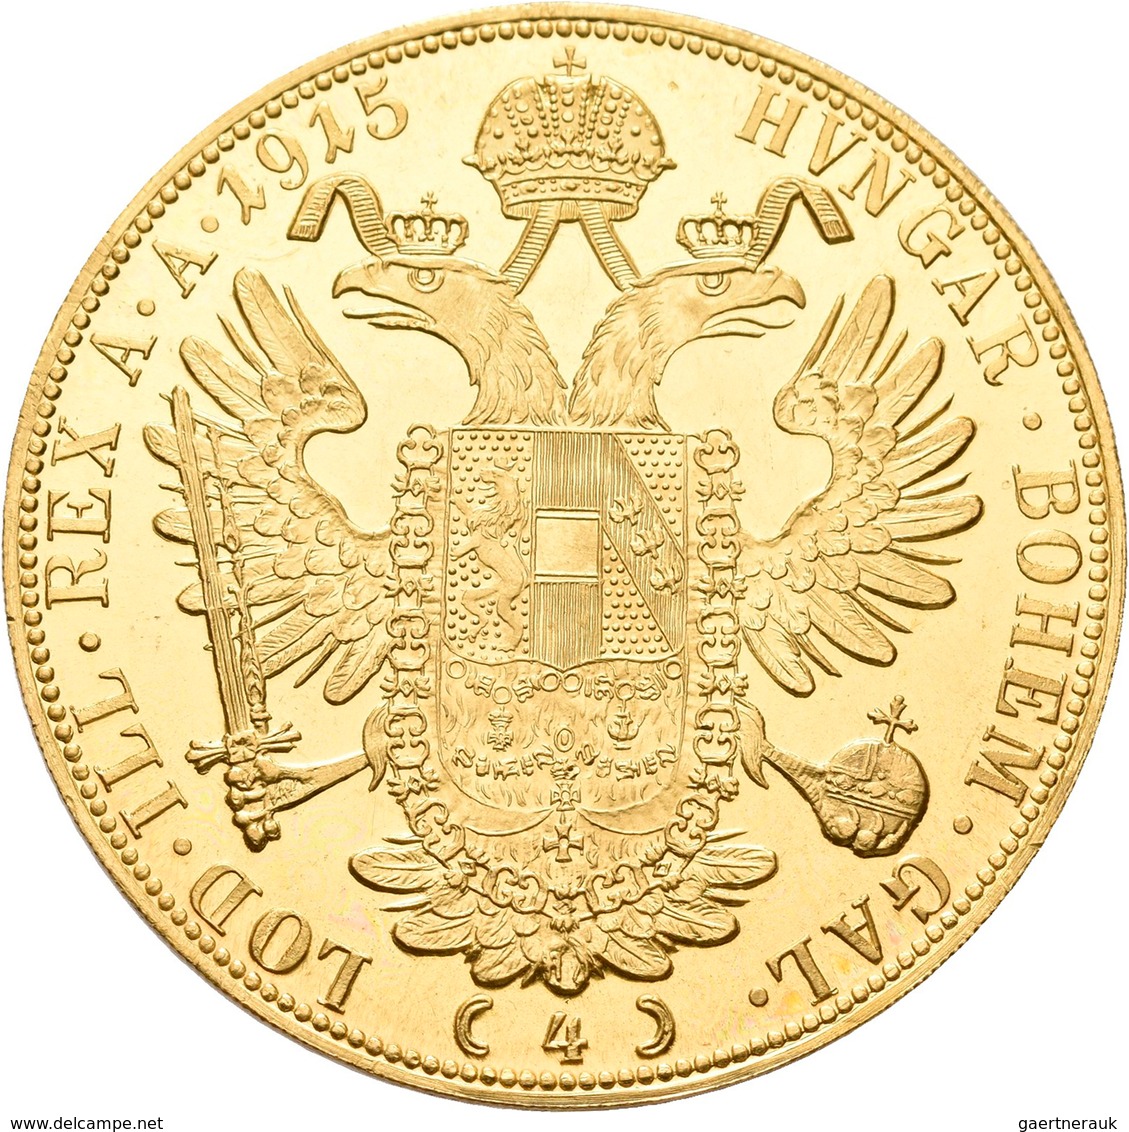 Österreich - Anlagegold: Franz Joseph I. 1848-1916: 4 Dukaten 1915 (NP), KM# 2276, Friedberg 488. 13 - Oostenrijk